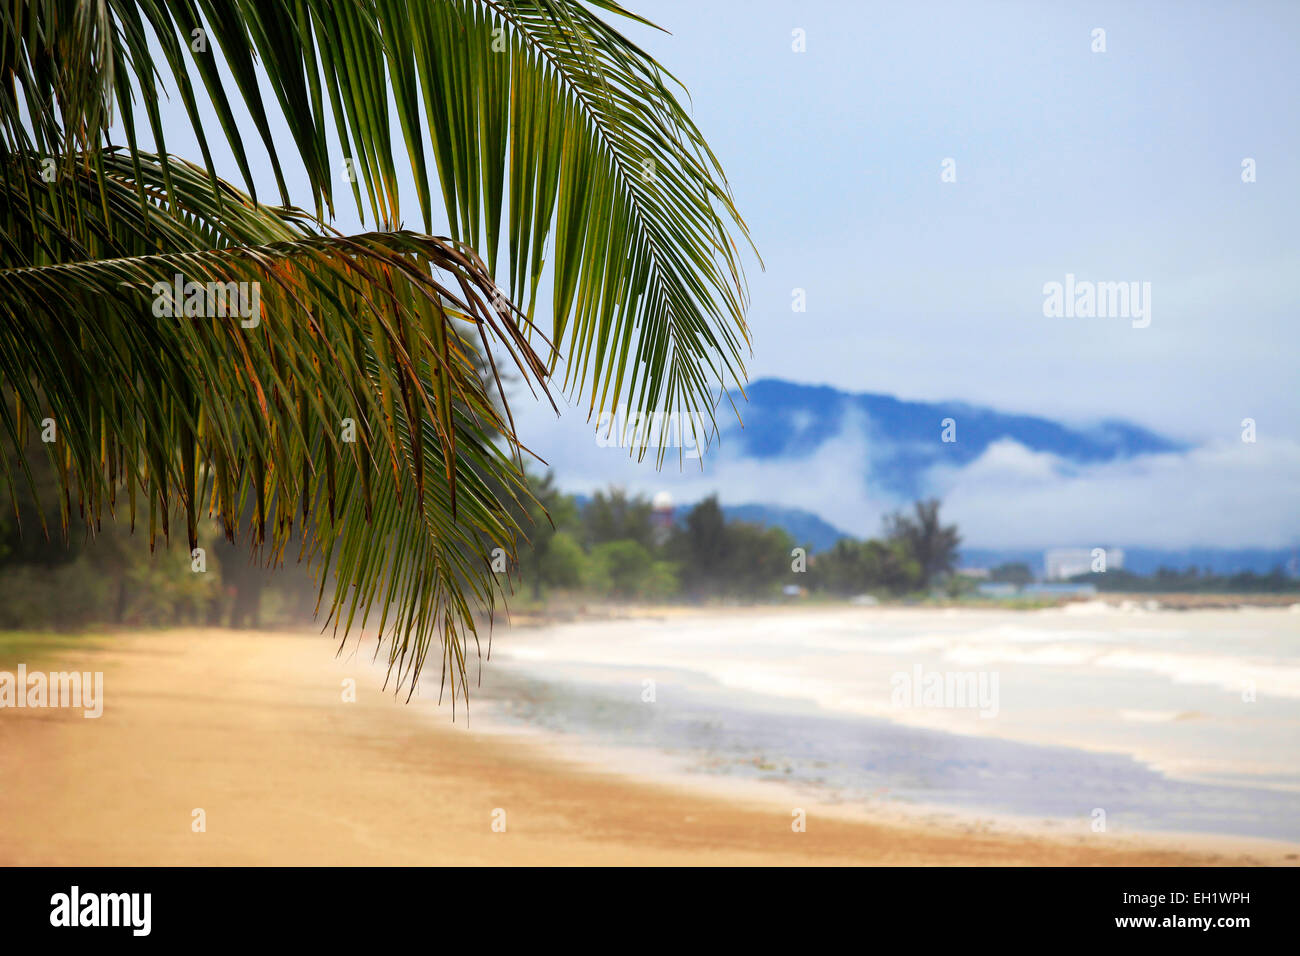 Vue de nice plage tropicale avec palm. Borneo, Malaisie Banque D'Images